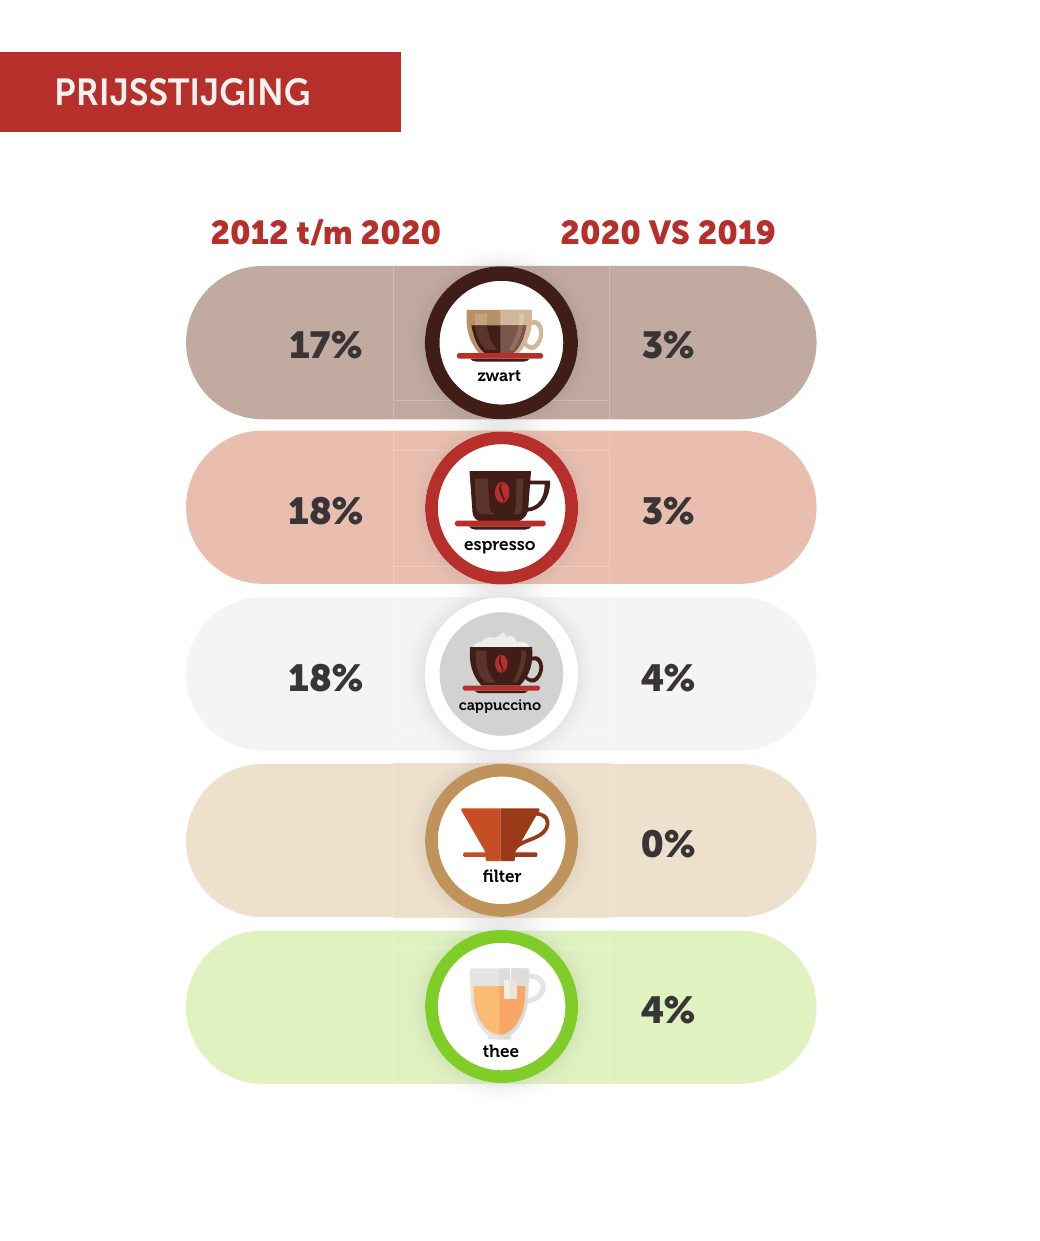 Koffie Benchmark 2020: prijs per kop stijgt, melk opkomst